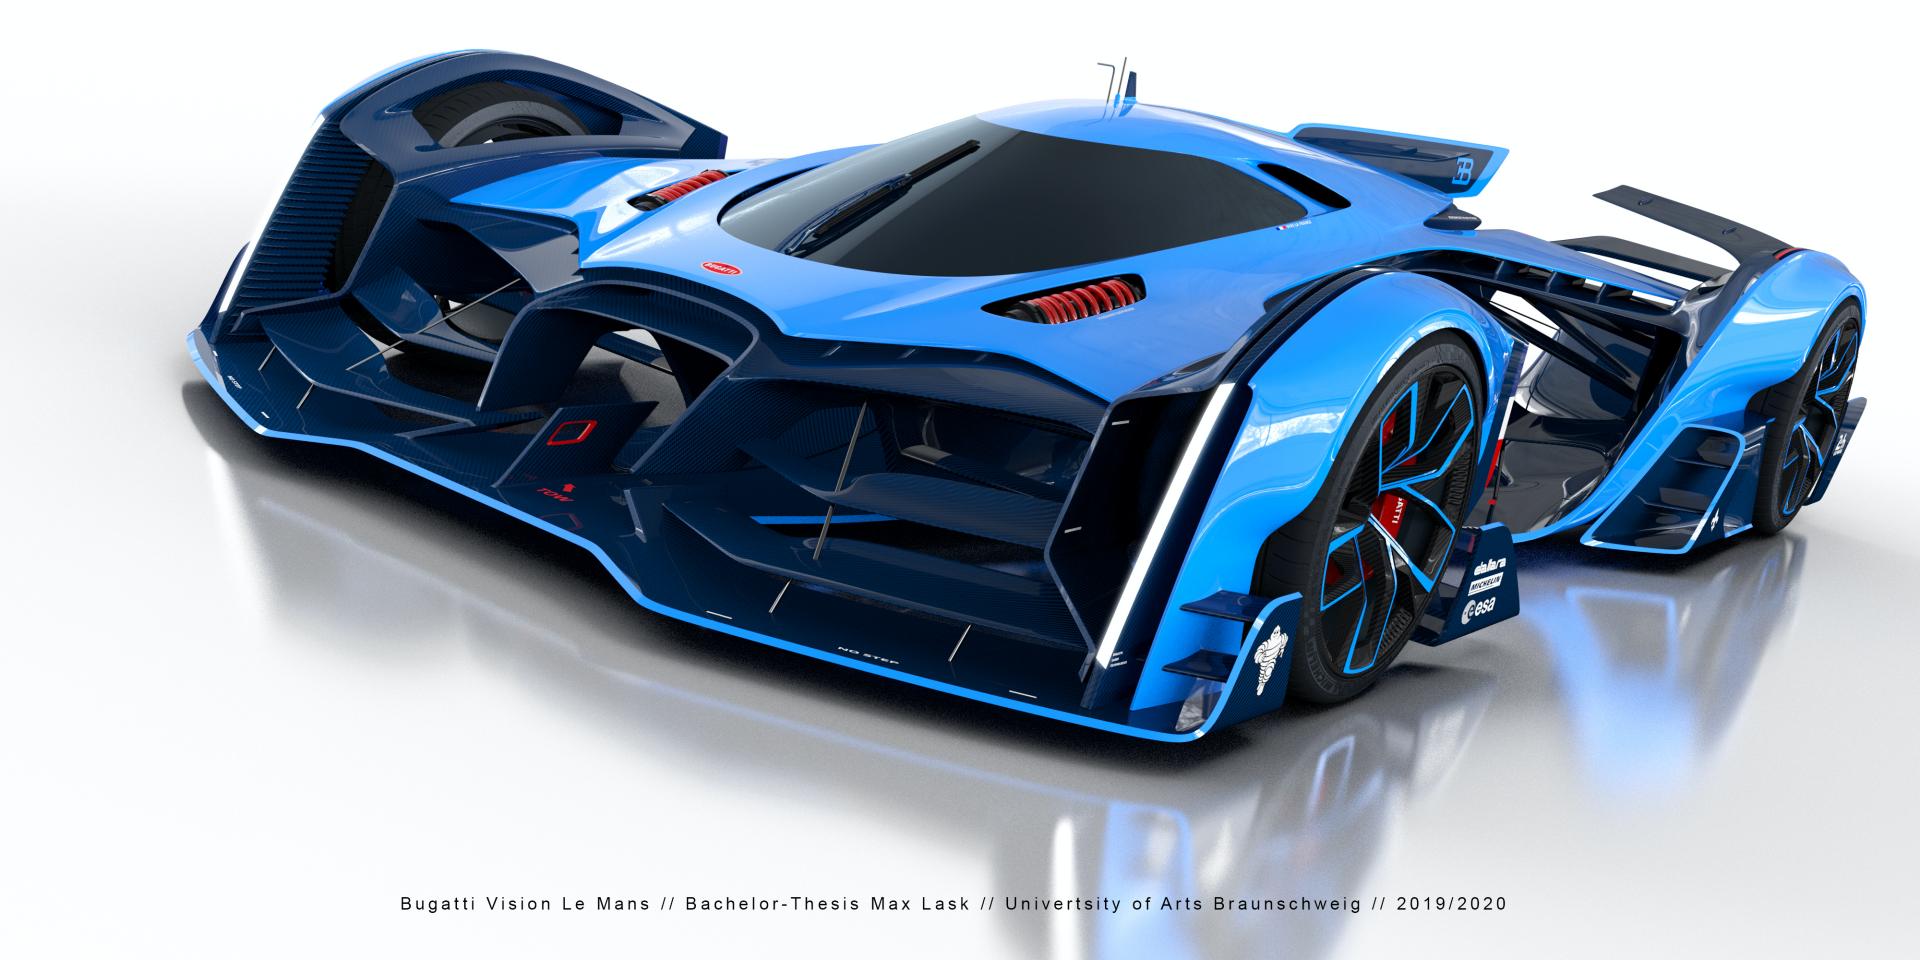 Bugatti Vision Le Mans concept / Max Lask